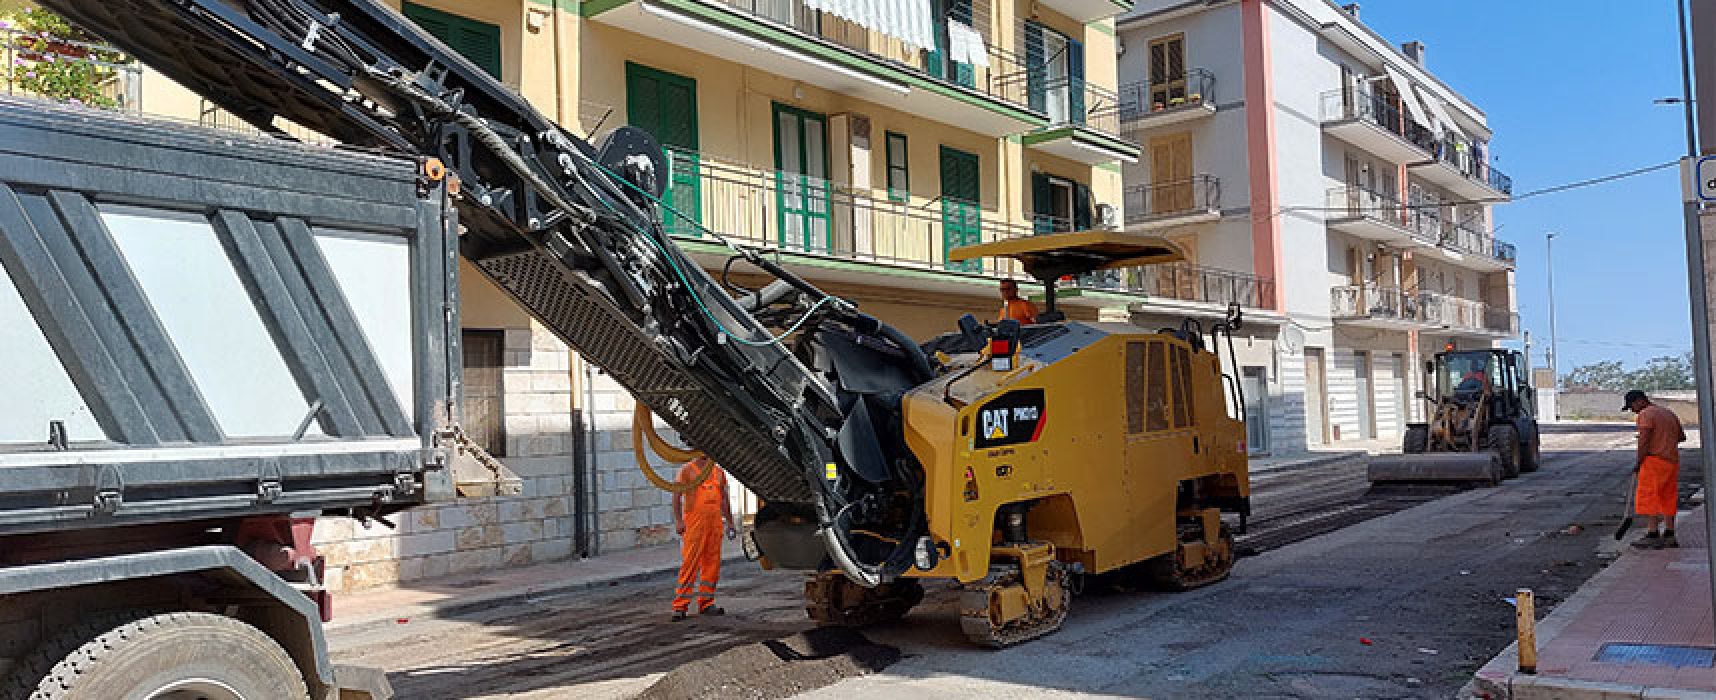 Ripartiti lavori per rifacimento strade, Angarano: “Manteniamo impegni presi” / VIDEO